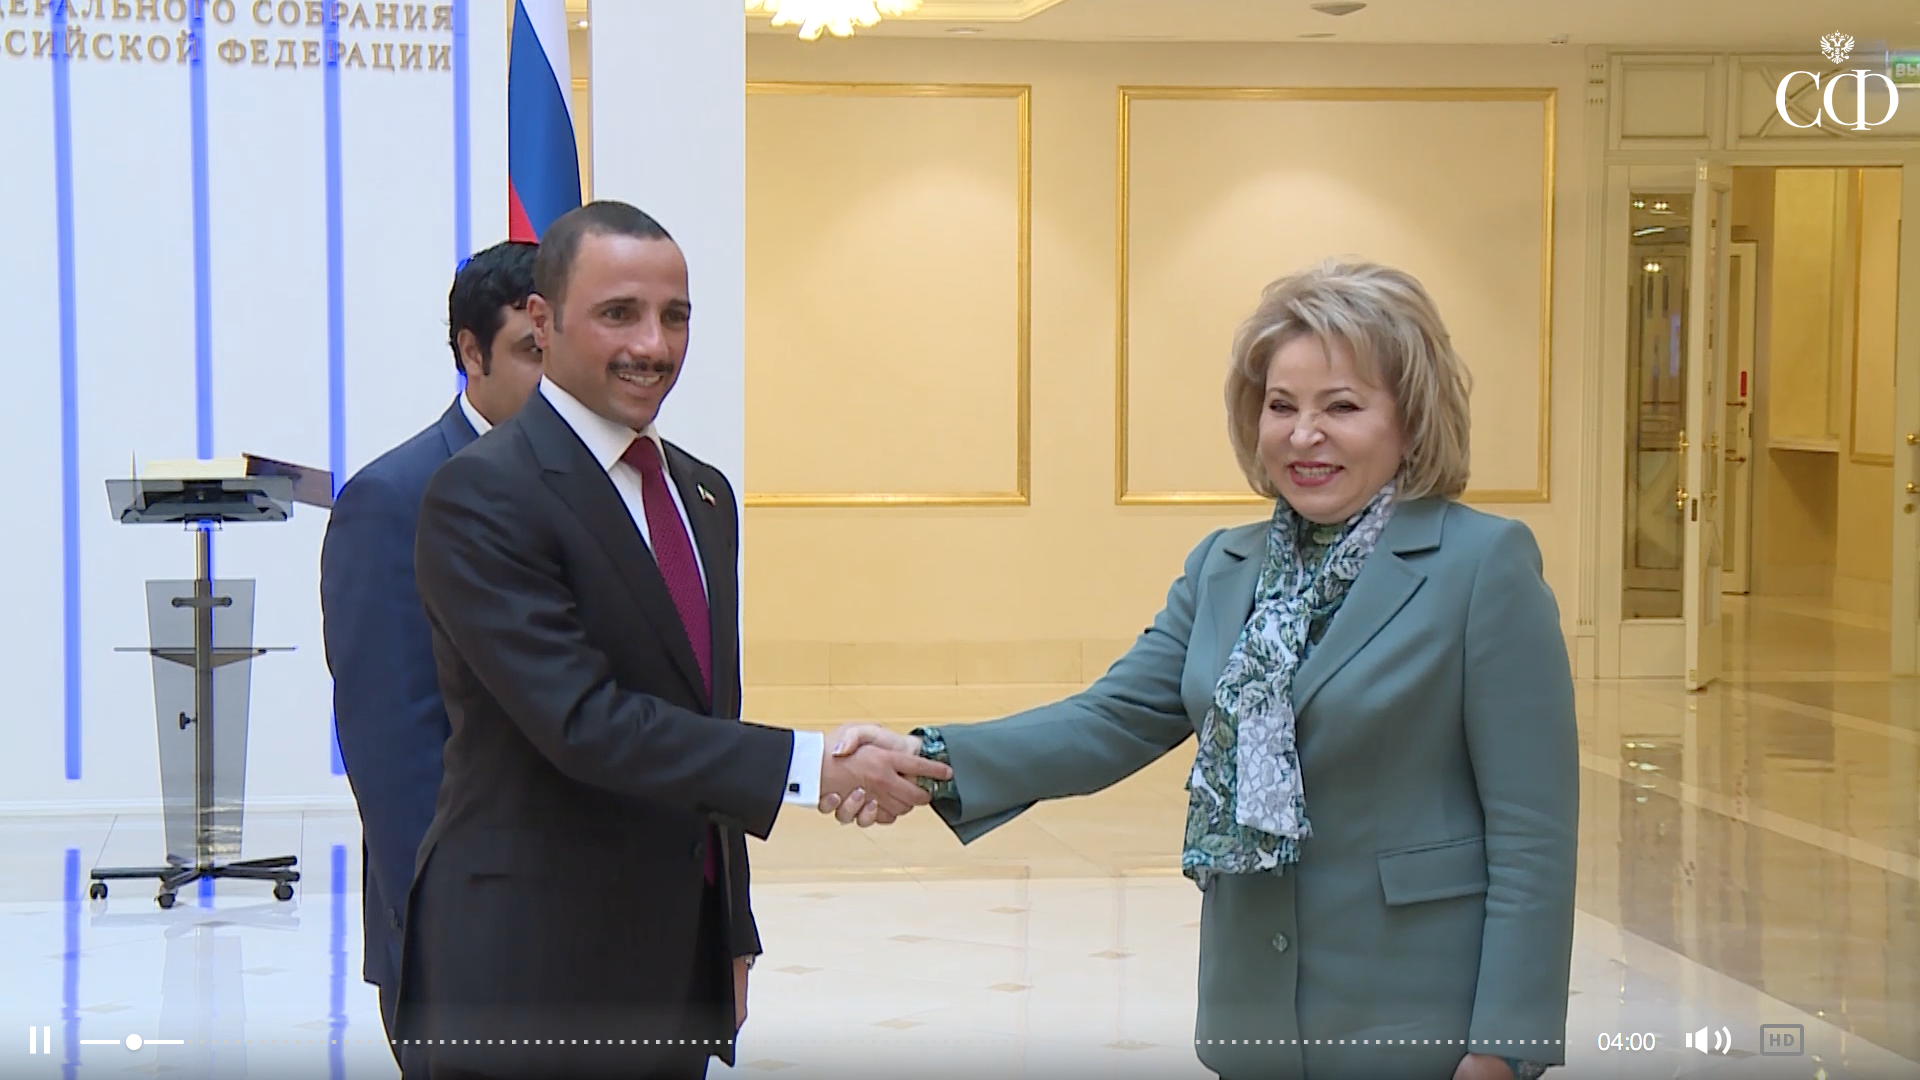 Валентина Матвиенко на встрече с Председателем Национального собрания Кувейта Марзуком Аль-Ганимом 22 апреля в Москве